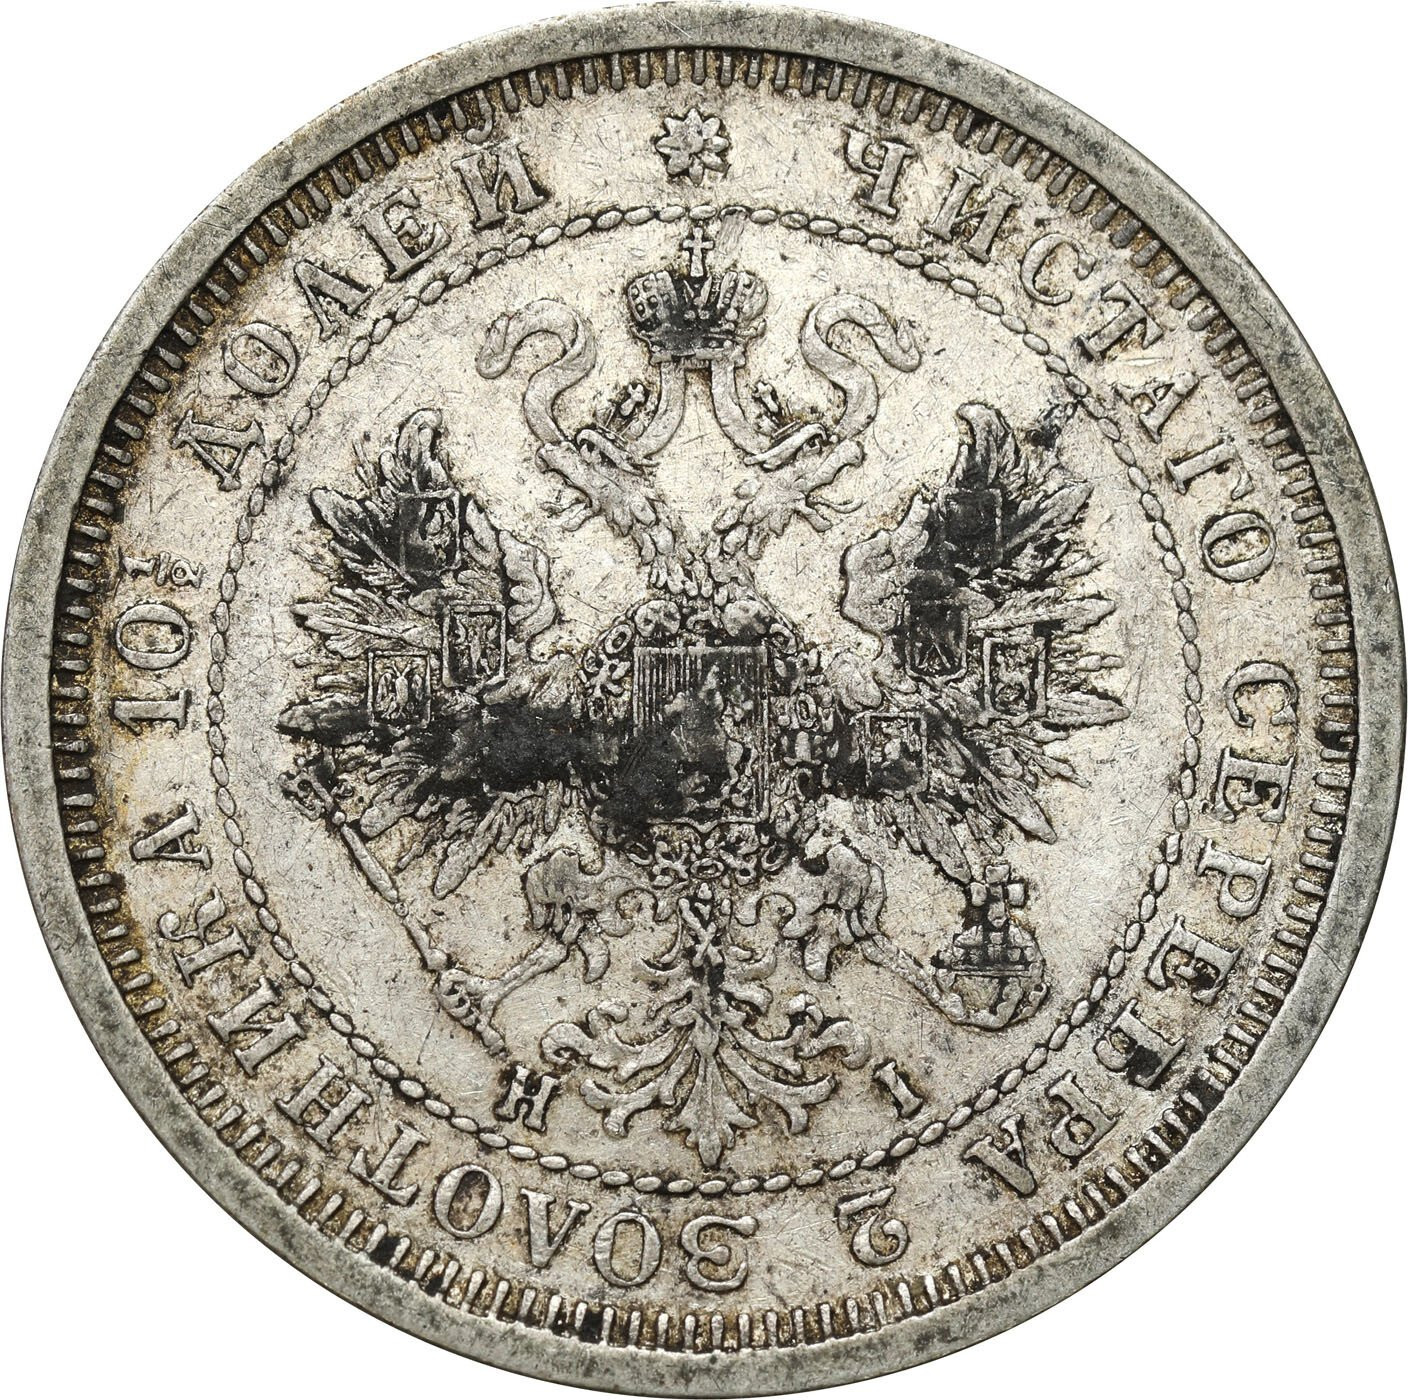 Rosja, Aleksander II. Połtina (1/2 rubla) 1877 НІ, Petersburg